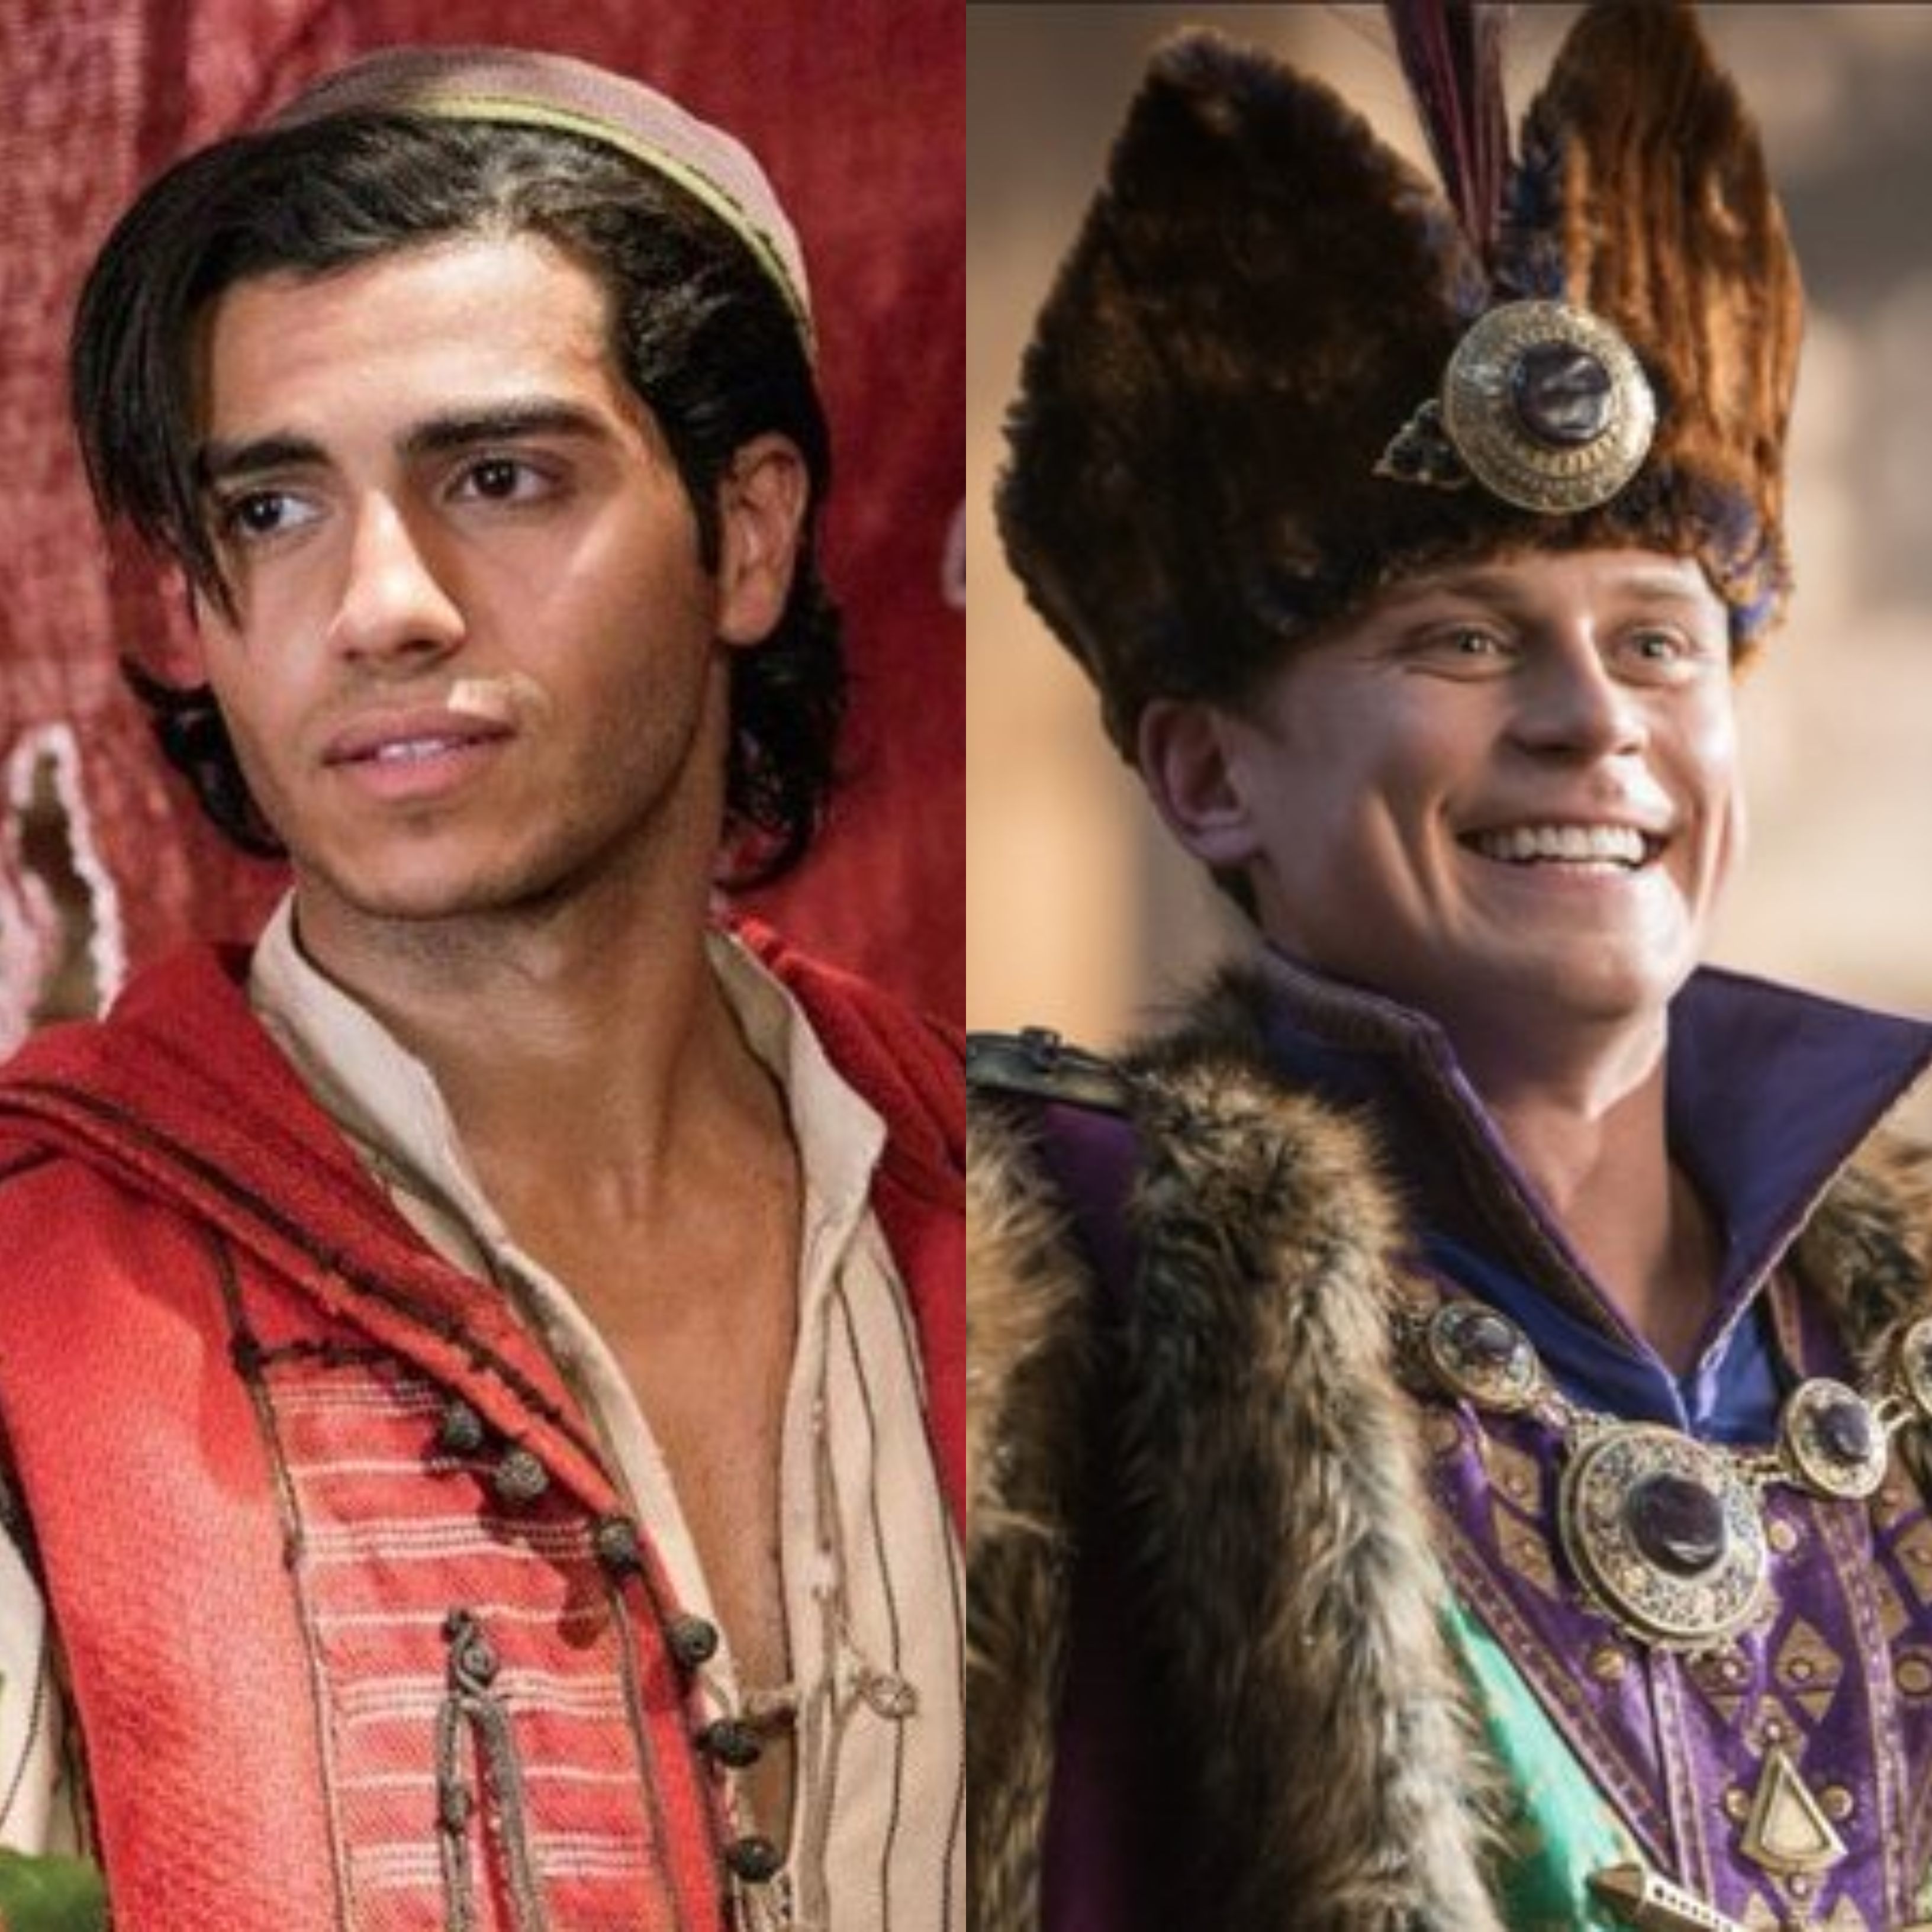 Disney Admits To Darkening White Actors' Skin For 'Aladdin